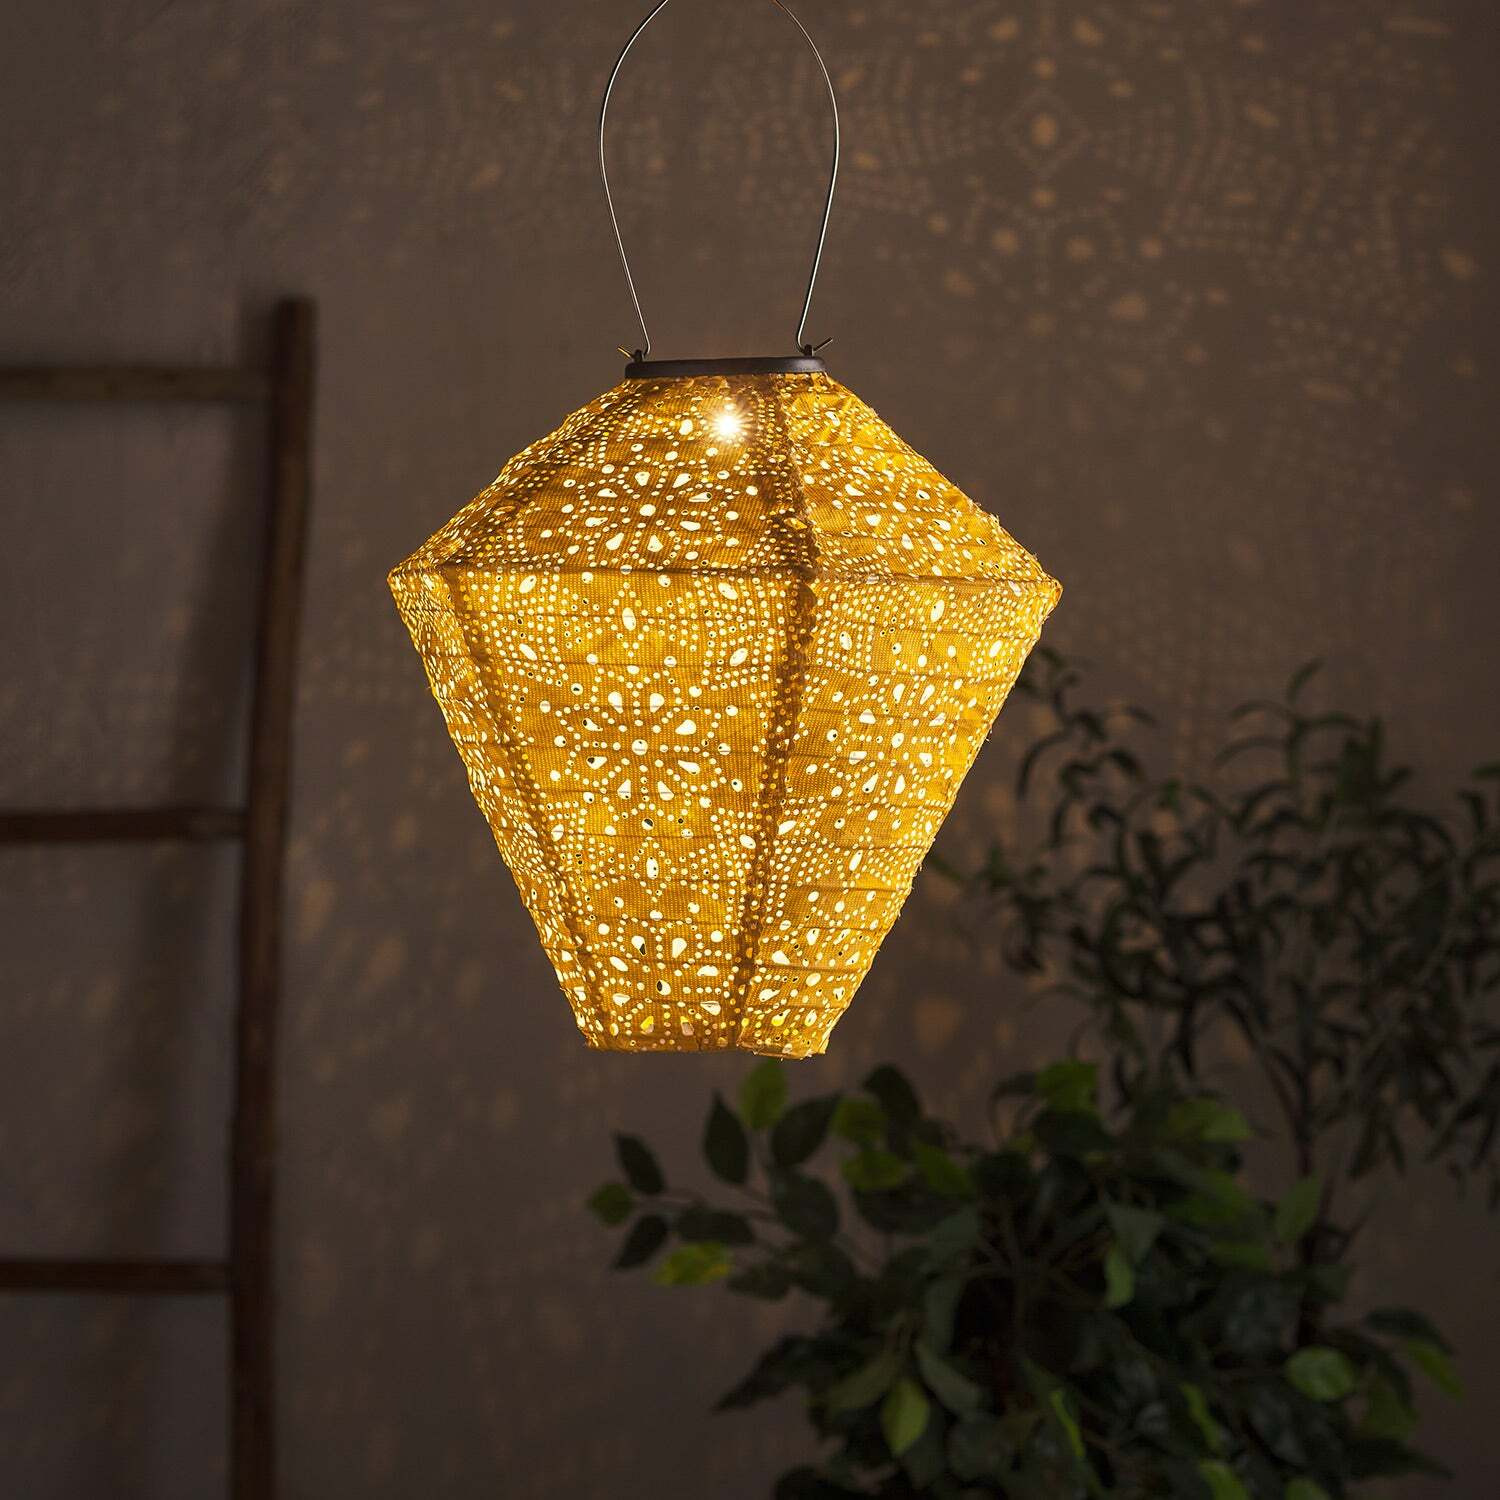 Tyvek Yellow Moroccan Hanging Solar Lantern - image 1